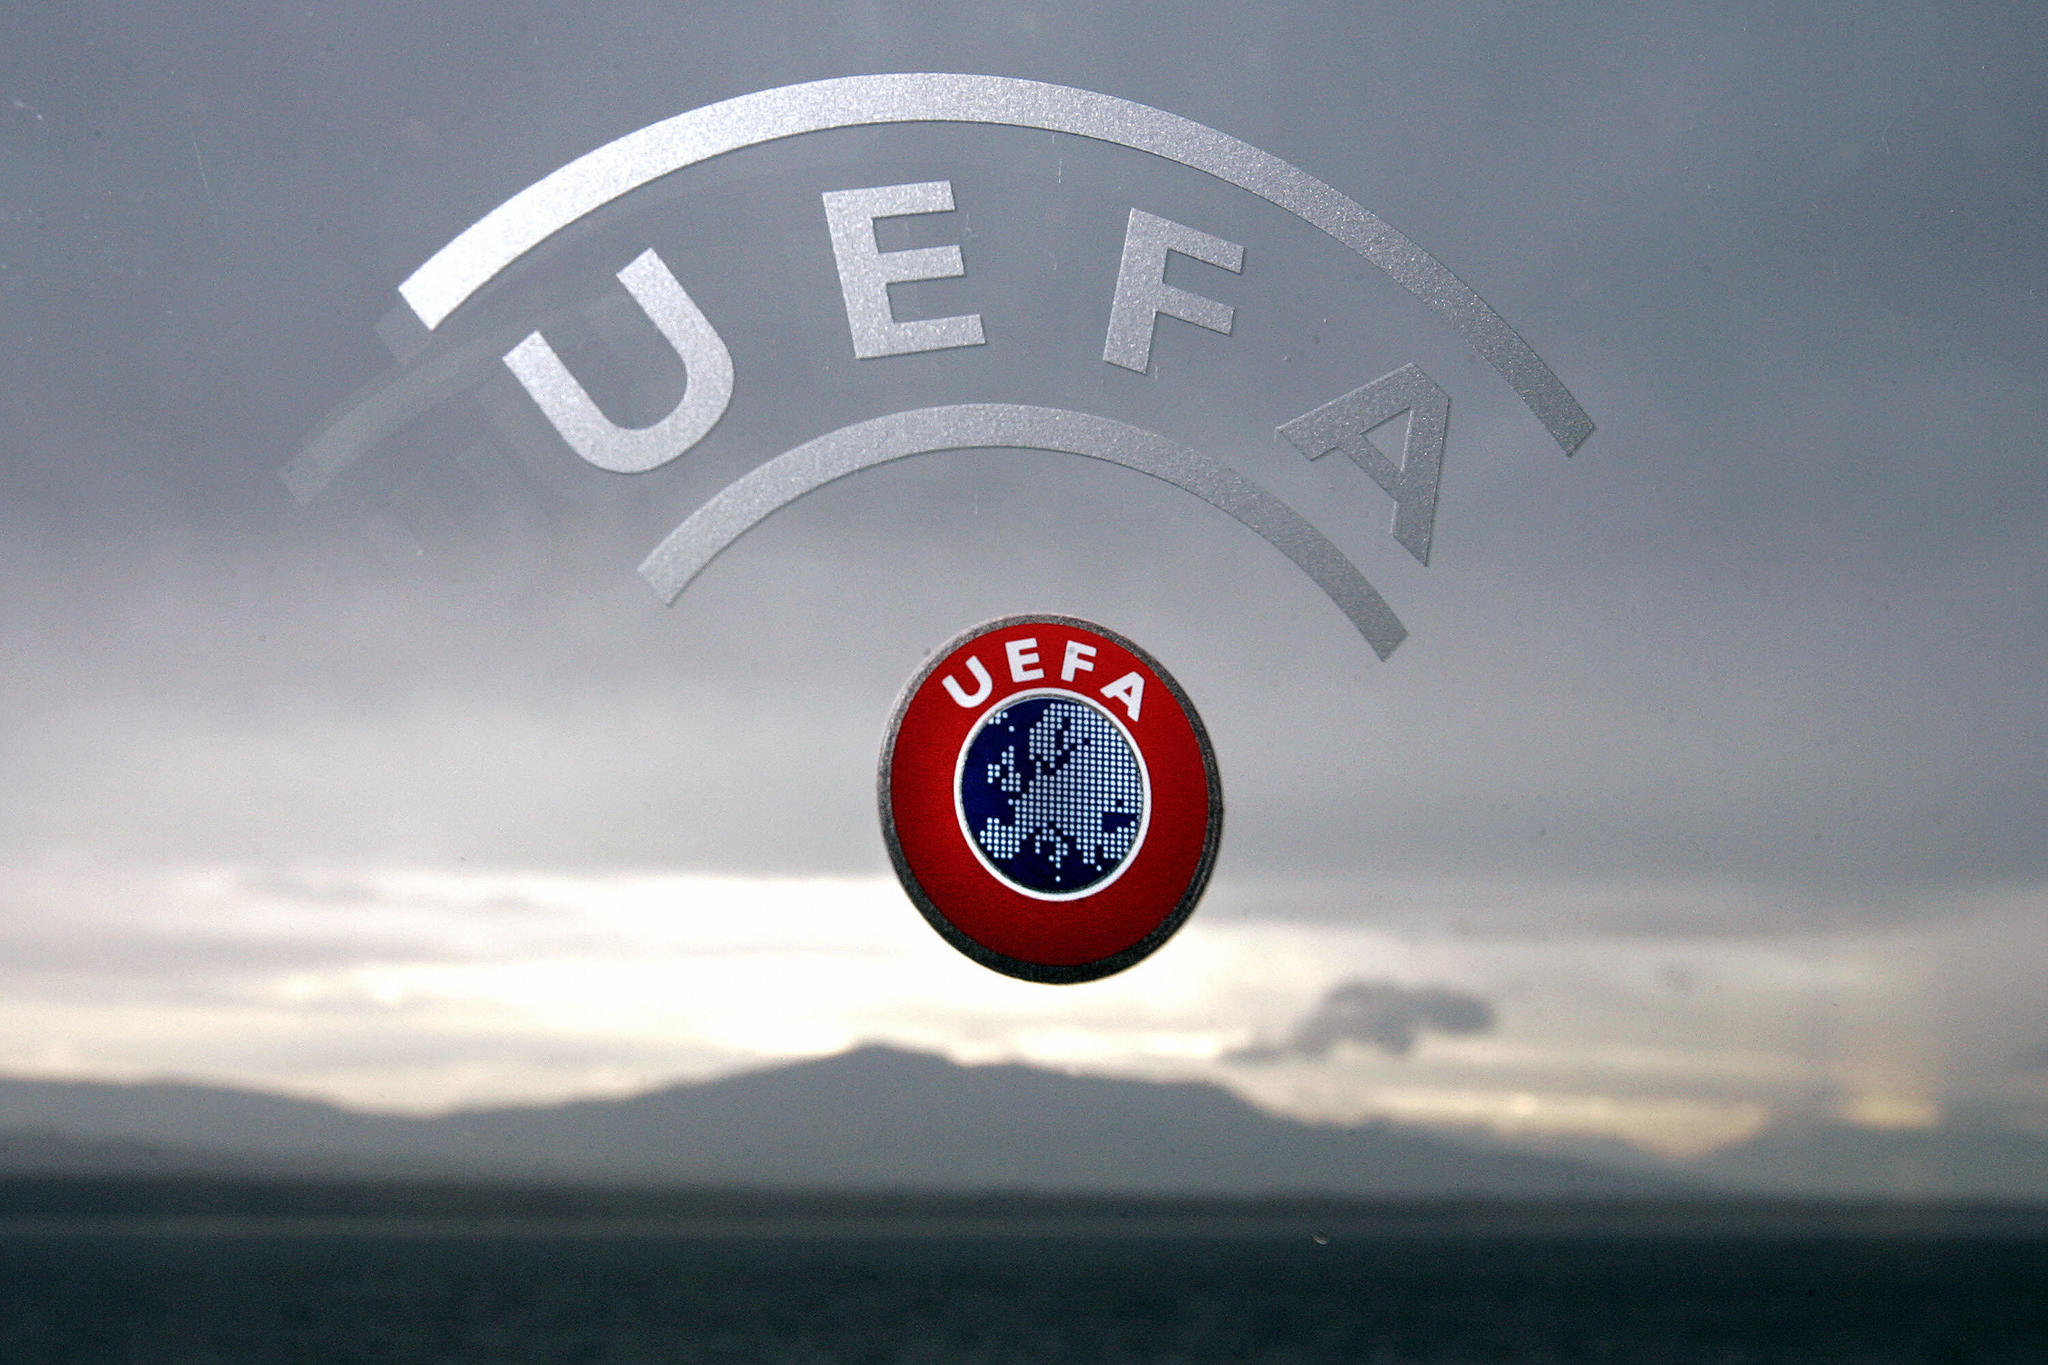 UEFA’dan karar çıktı!